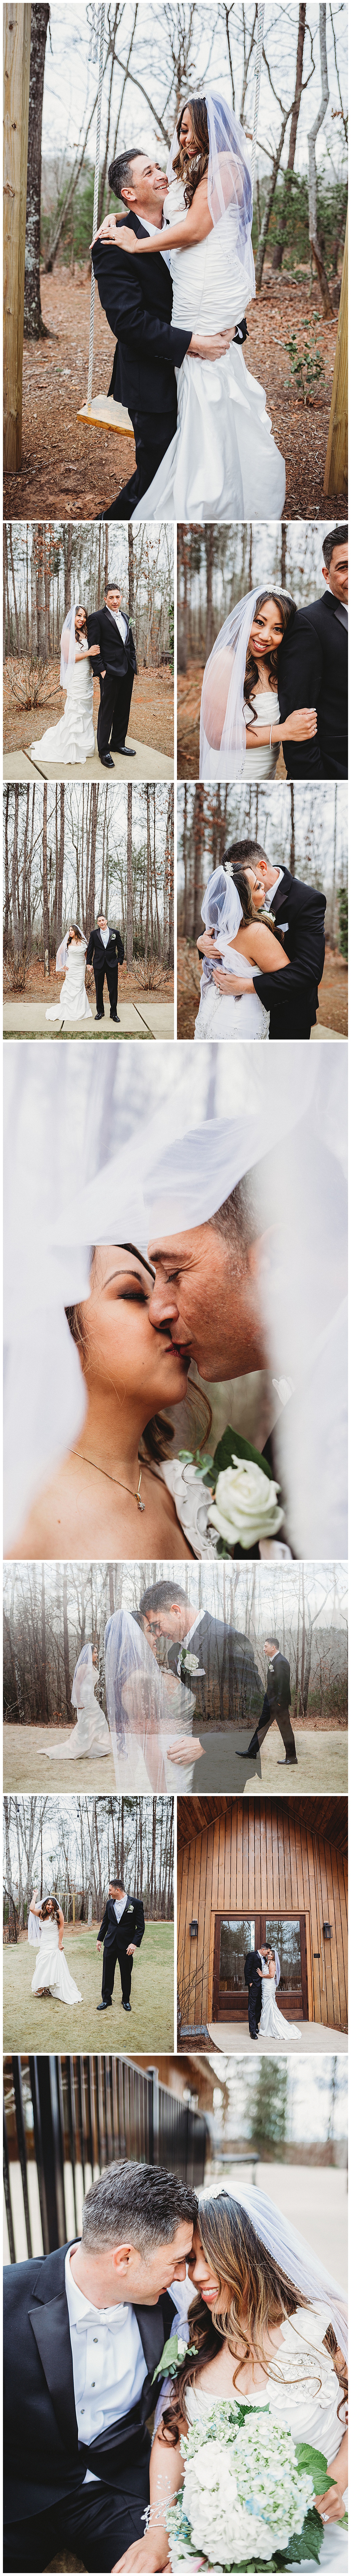 Christine Quarte Photography - Wedding Portraits 